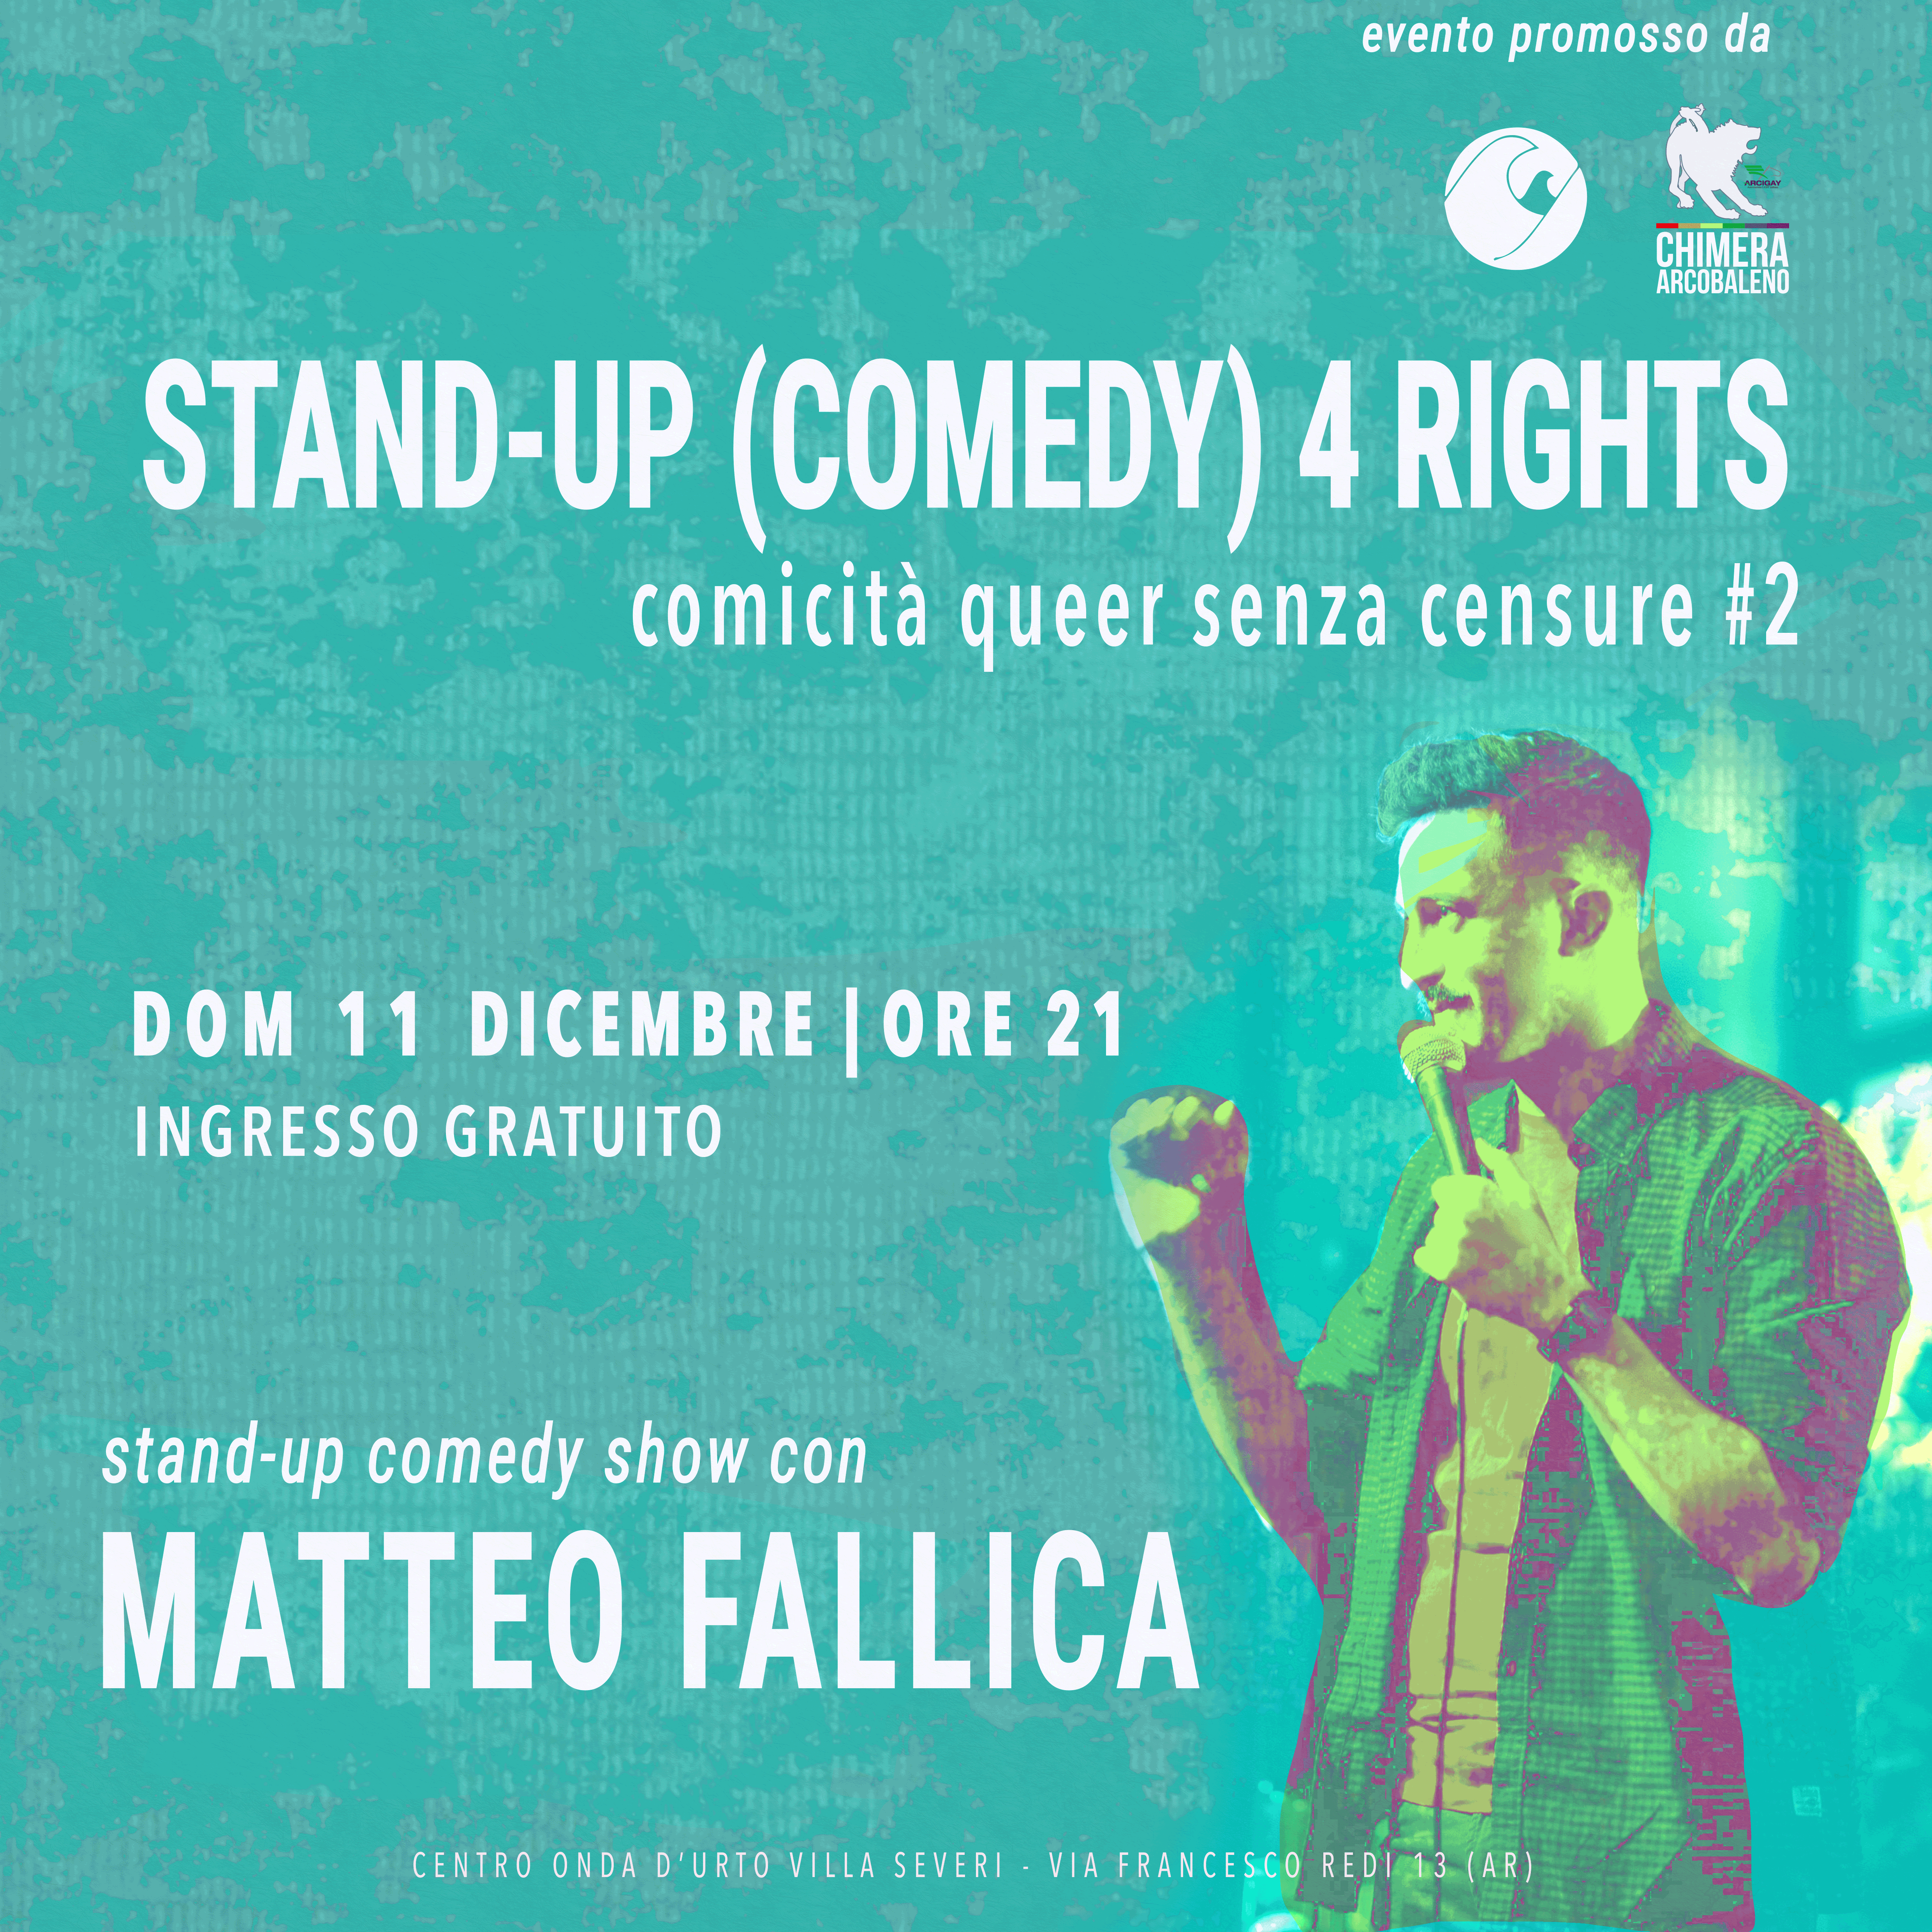 Matteo Fallica ad Arezzo per una serata di stand-up comedy queer: Domenica 11 Dicembre ore 21